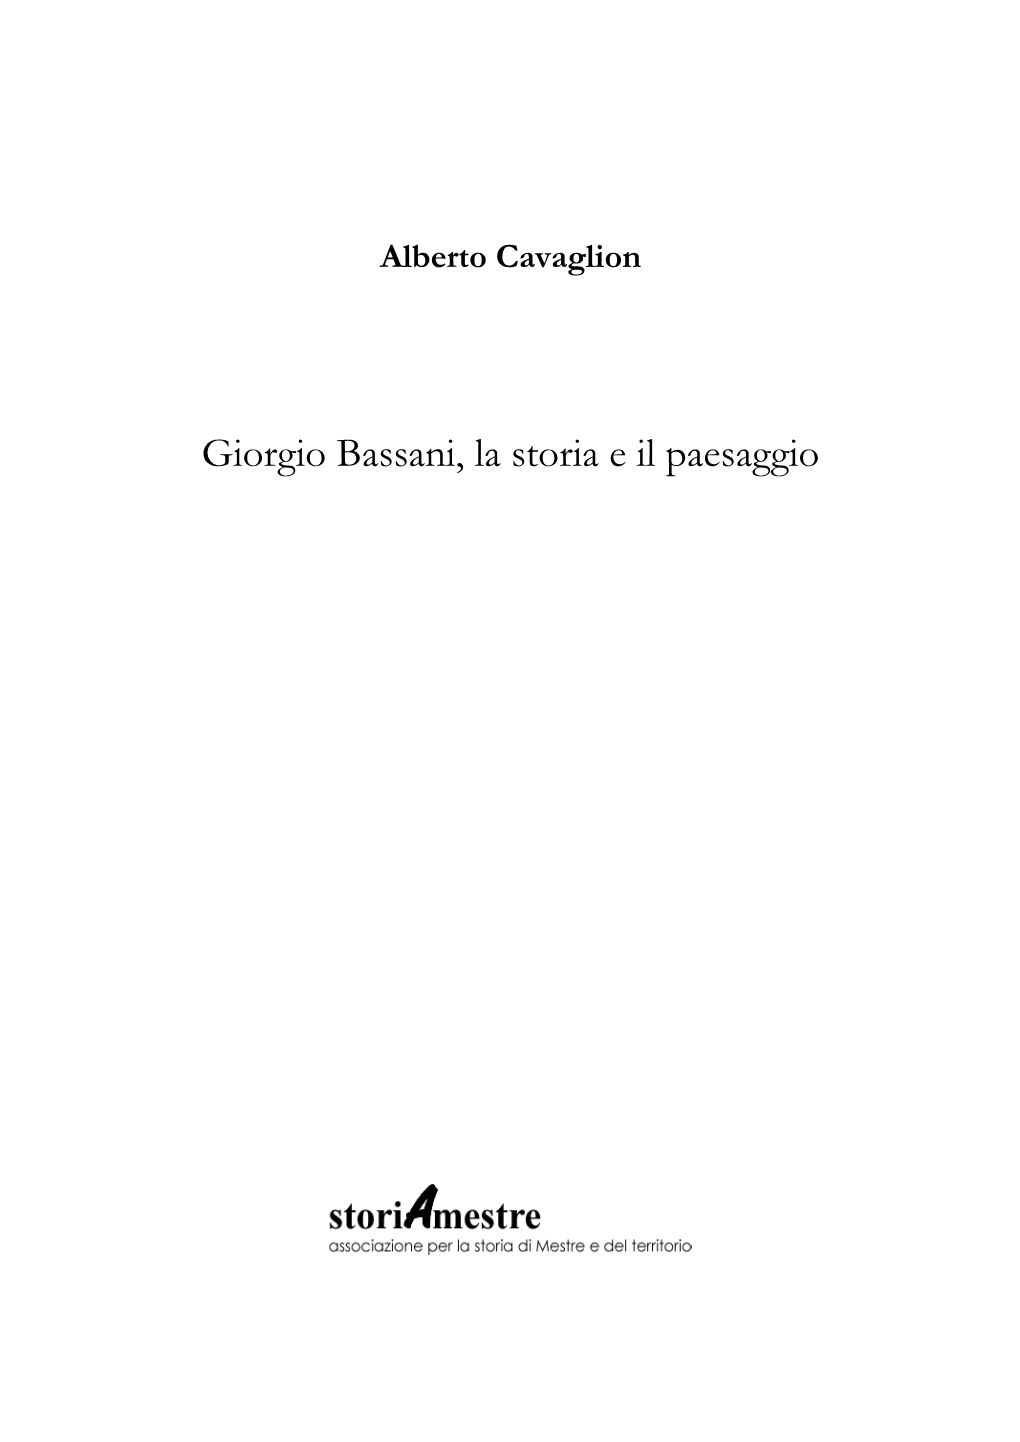 Giorgio Bassani, La Storia E Il Paesaggio